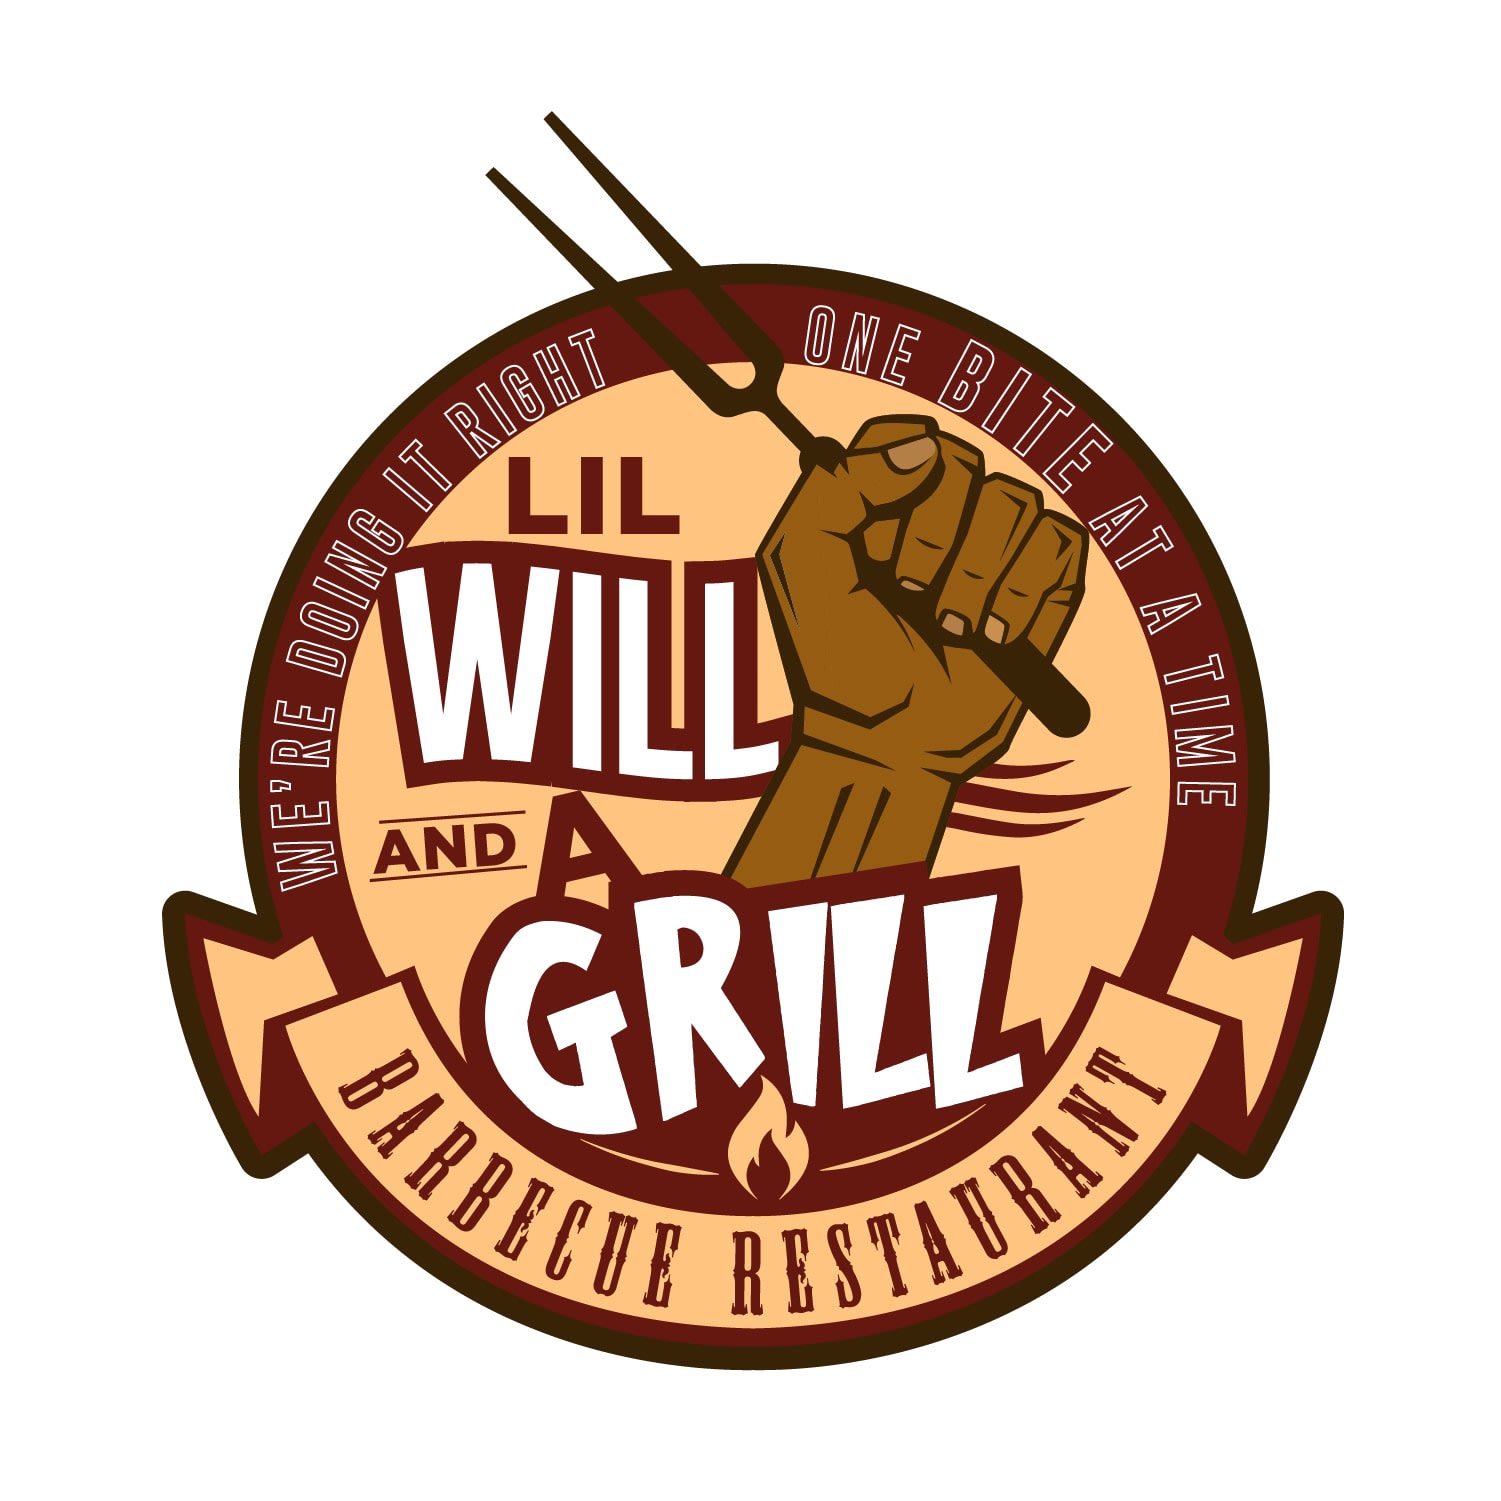 Lil Will & A Grill